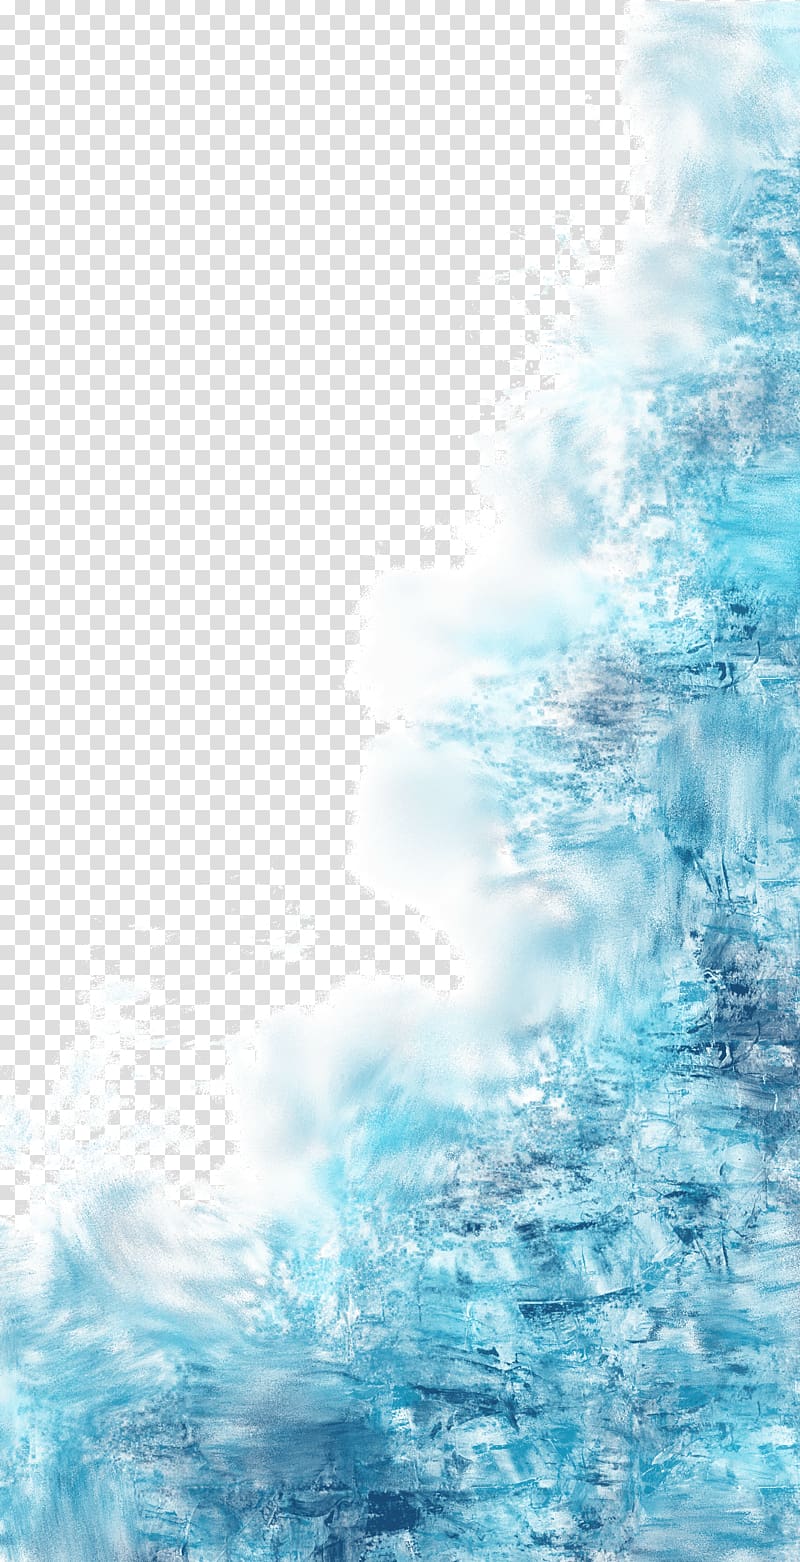 Blue , Blue water splash, blue illustration transparent background PNG clipart